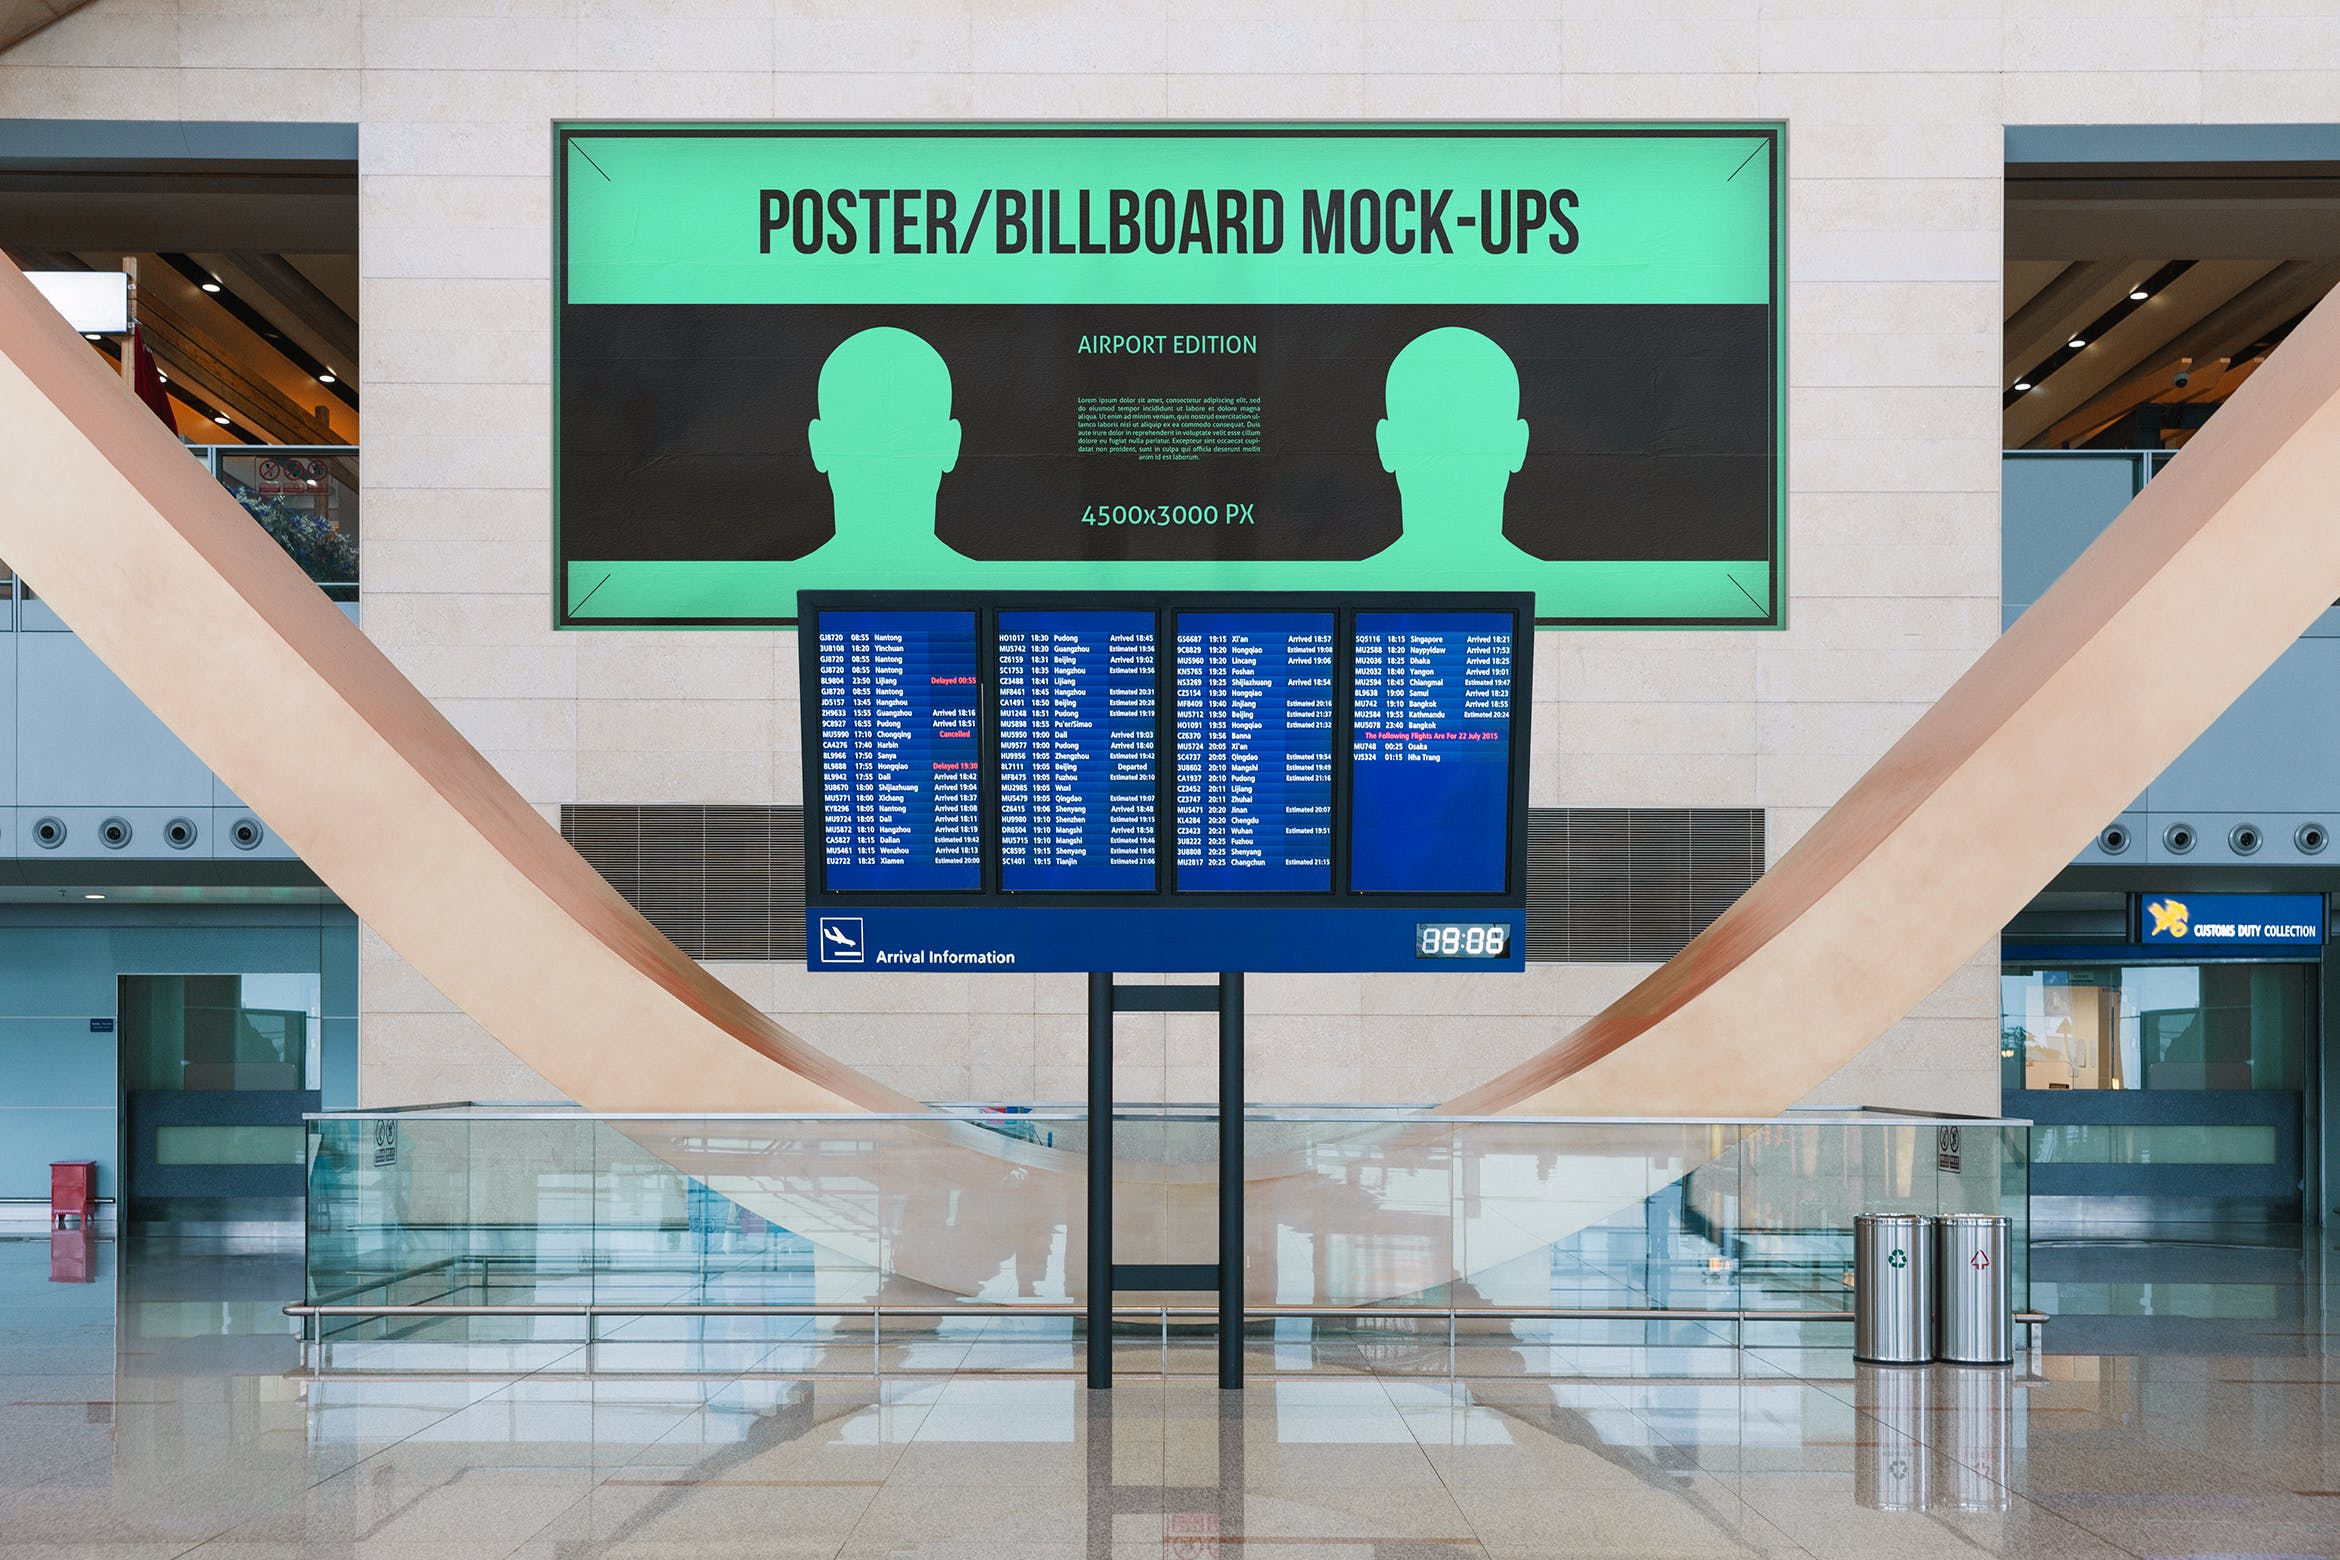 机场航班信息屏幕海报/广告牌样机普贤居精选模板#7 Poster / Billboard Mock-ups – Airport Edition #7插图